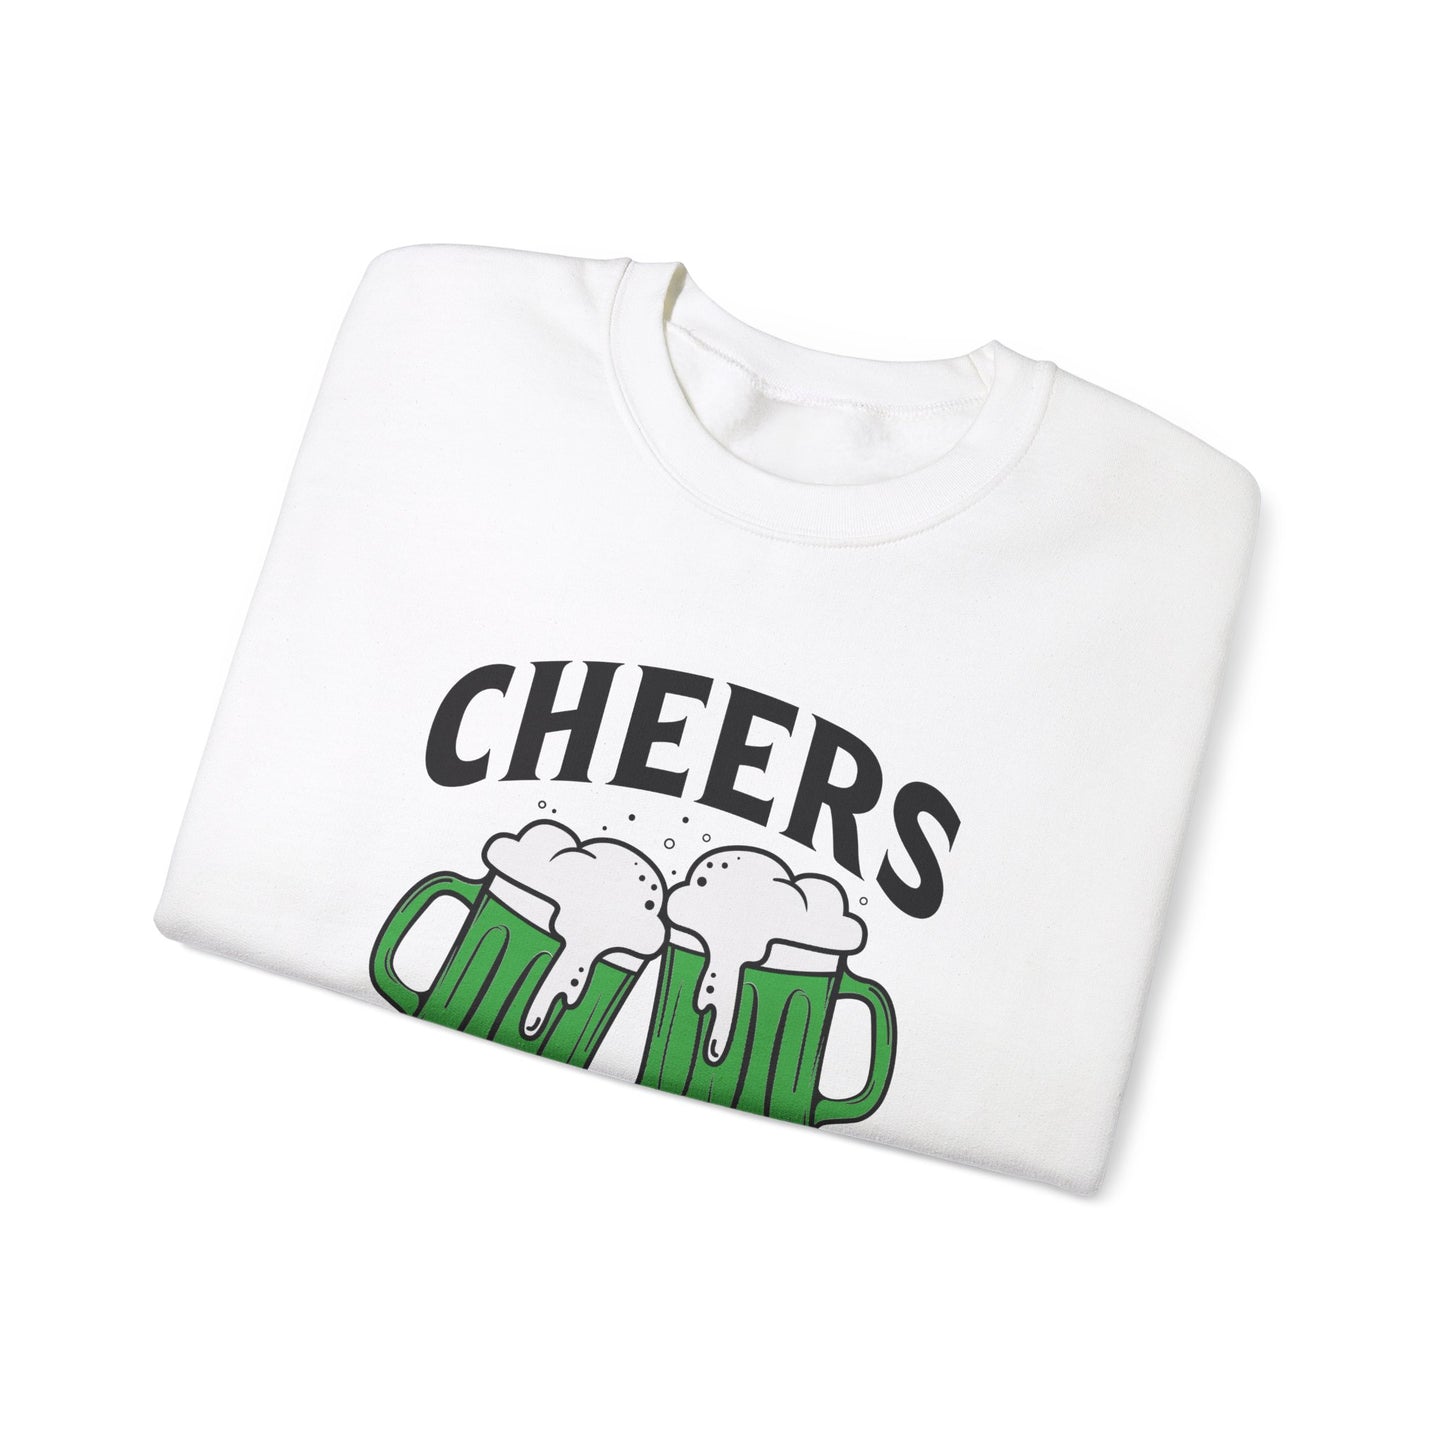 Cozy Comfort: Cheers Fu$kers Unisex Heavy Blend Crewneck Sweatshirt